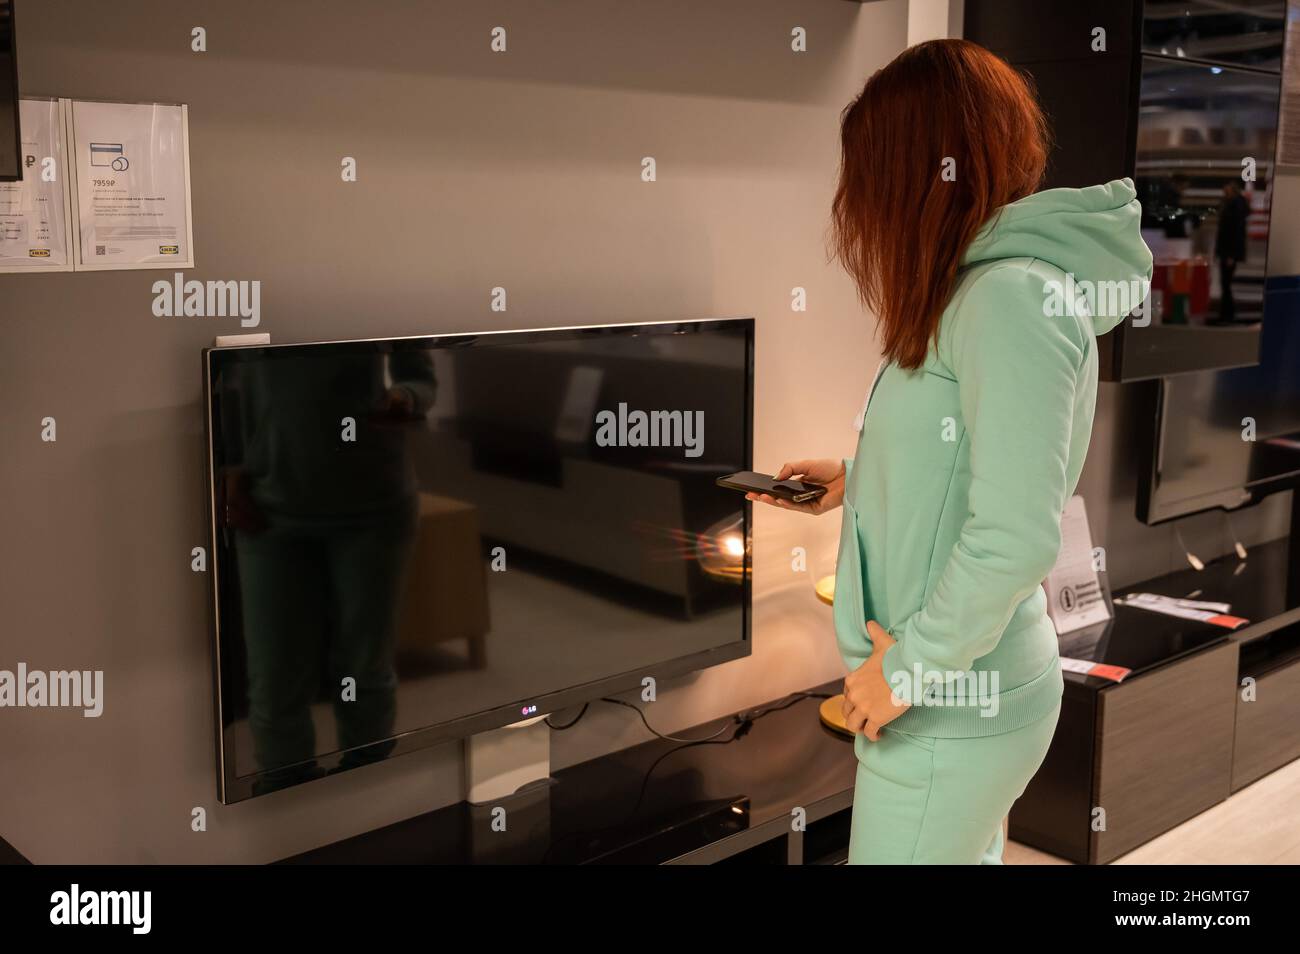 Une femme tient une télécommande de téléviseur dans sa main.La fille choisit des articles d'intérieur dans le magasin IKEA.Novosibirsk.02.26.2020. Banque D'Images